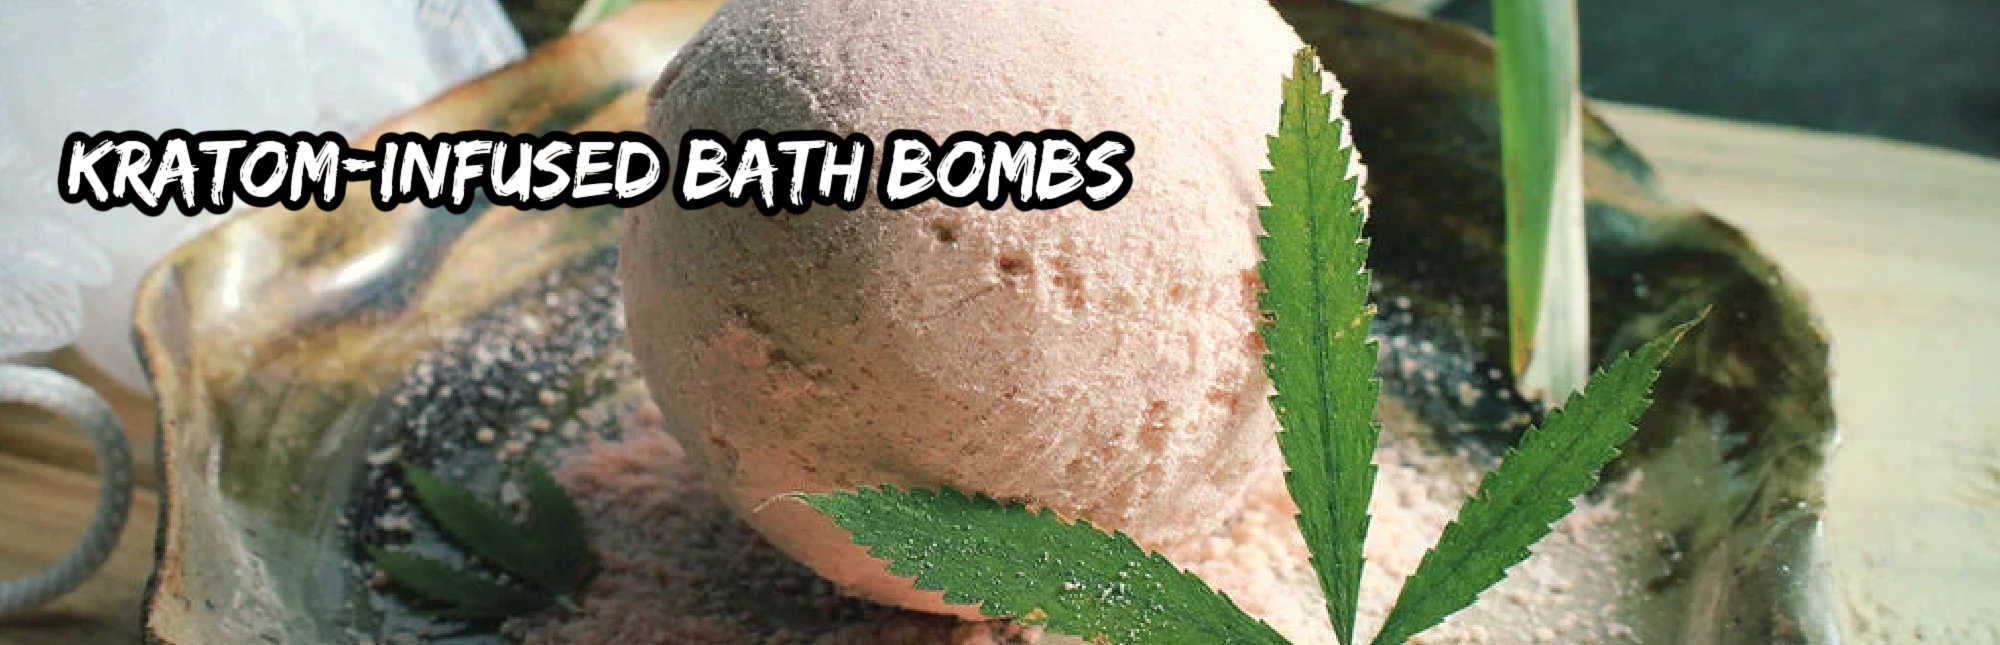 image of kratom infused bath bomb